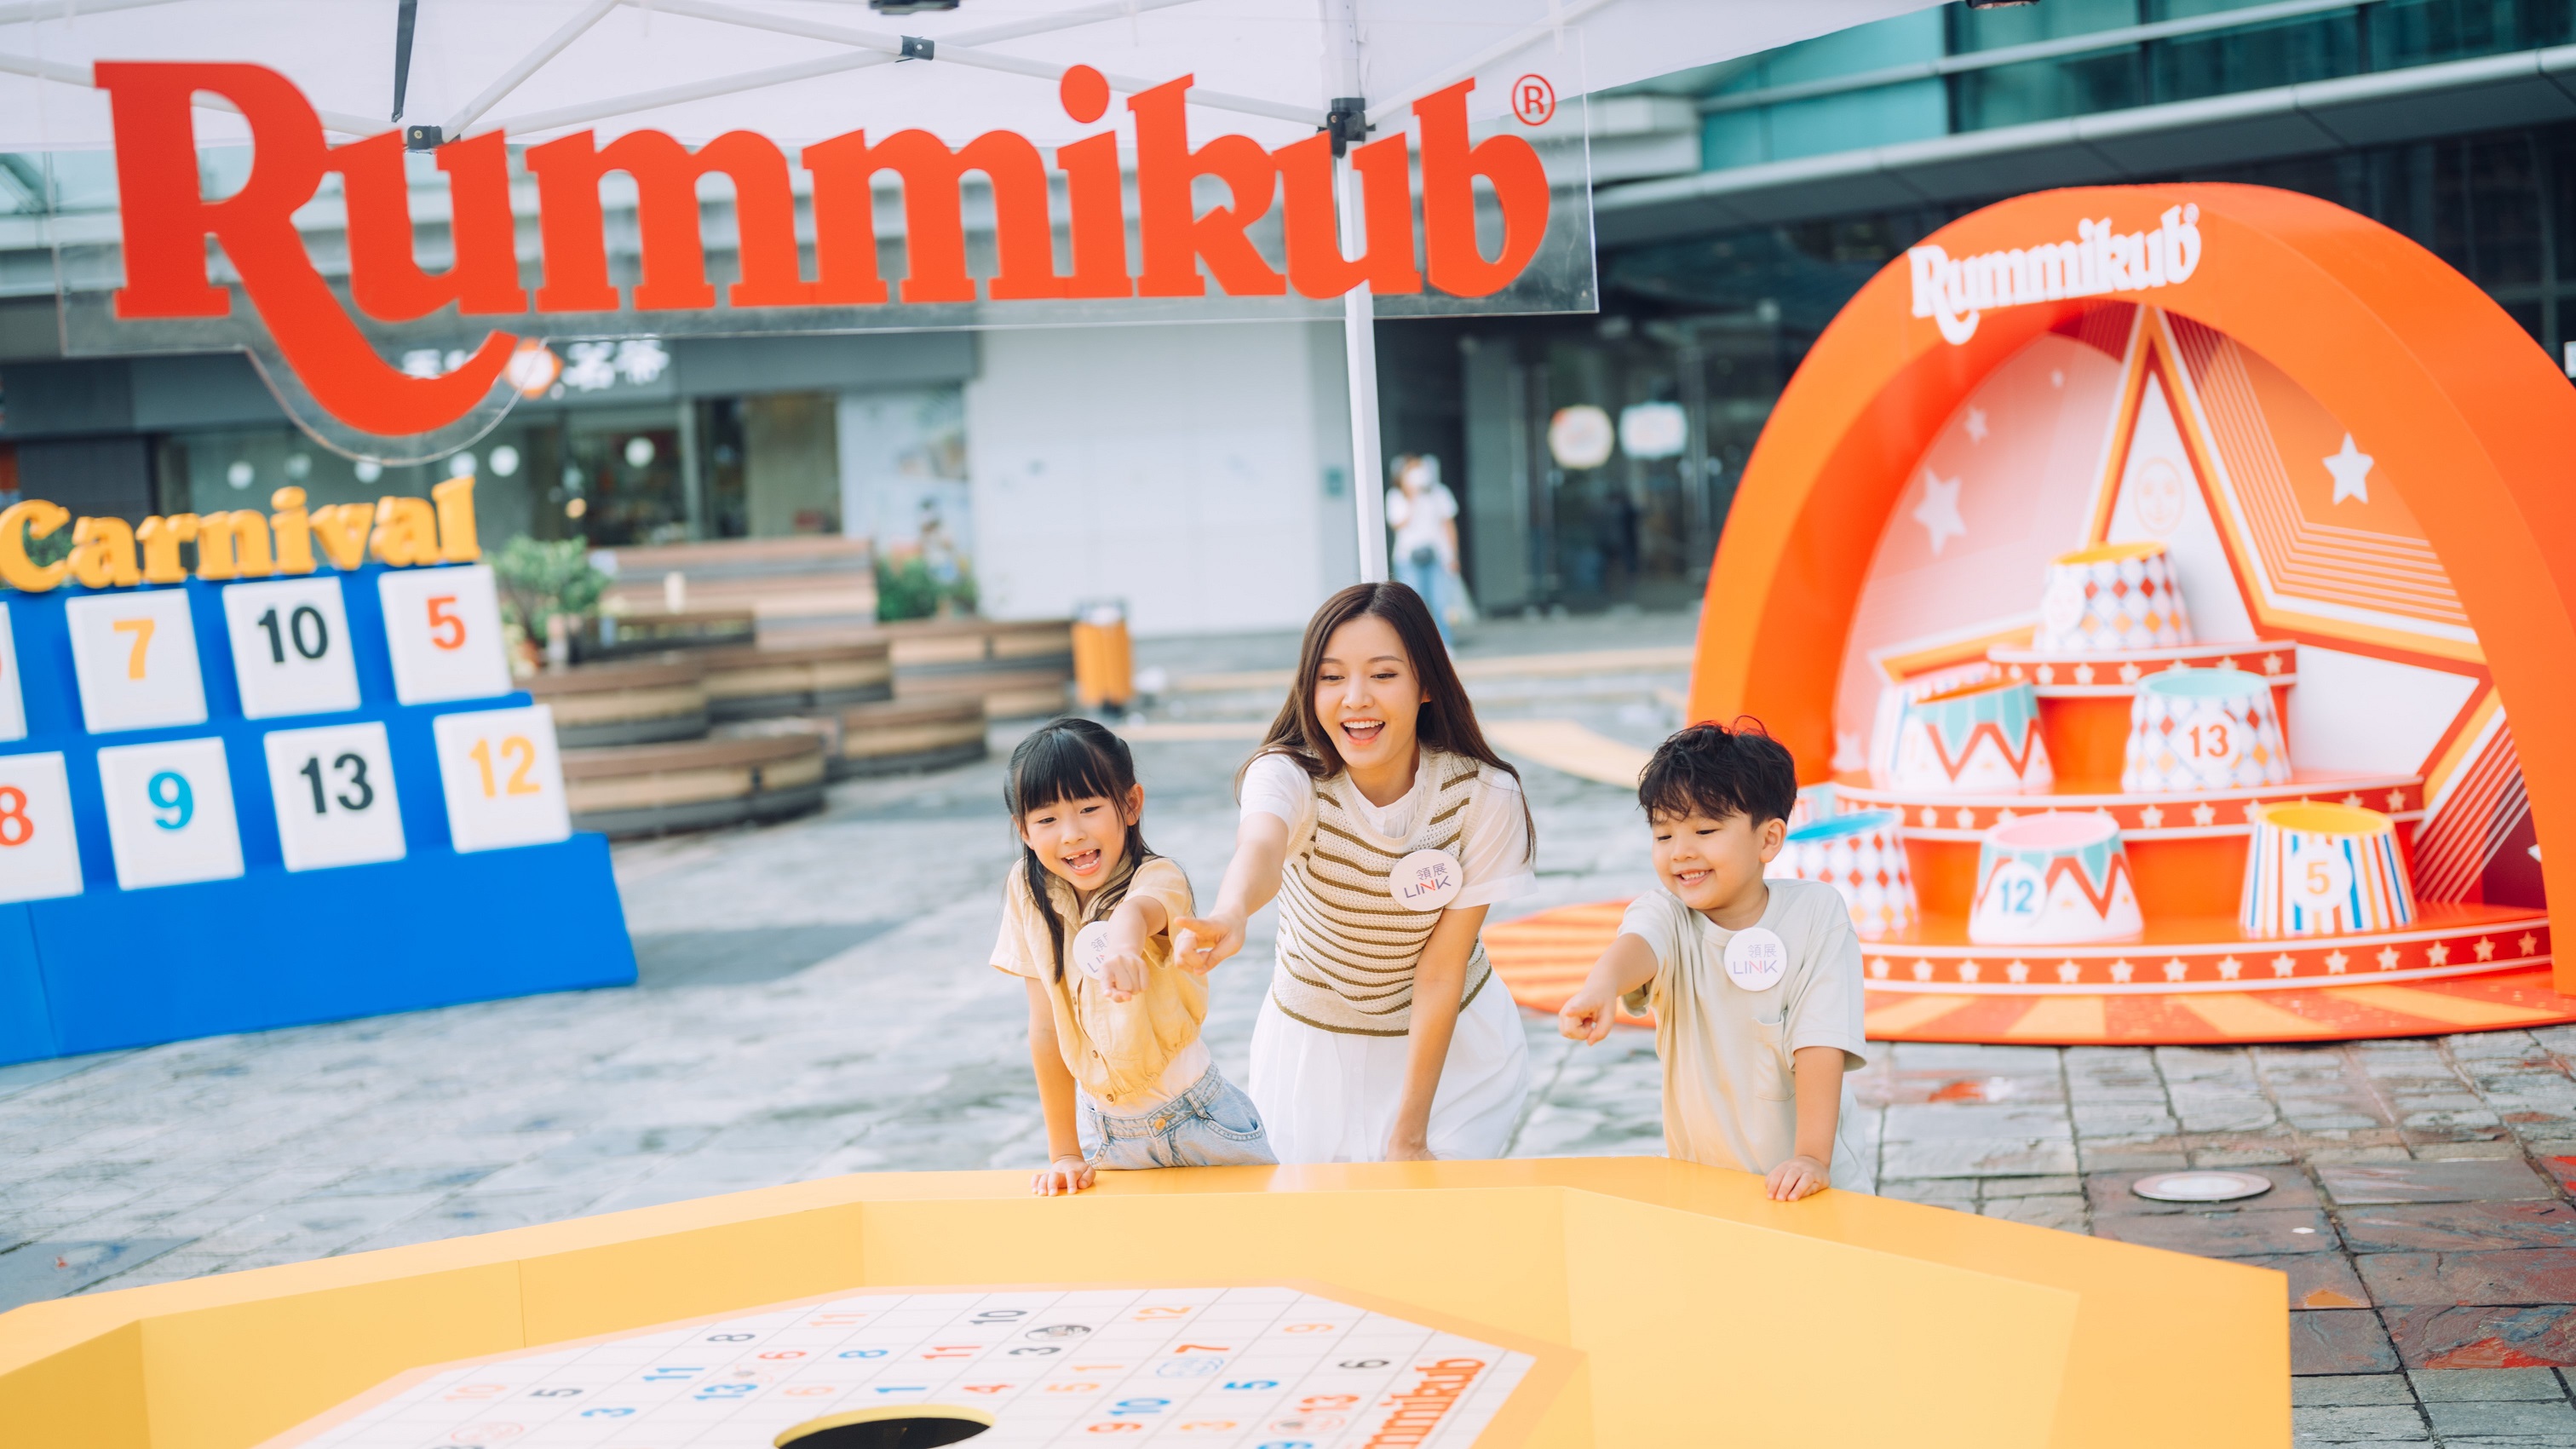 【玩樂】Rummikub戶外嘉年華 免費參與有獎攤位遊戲